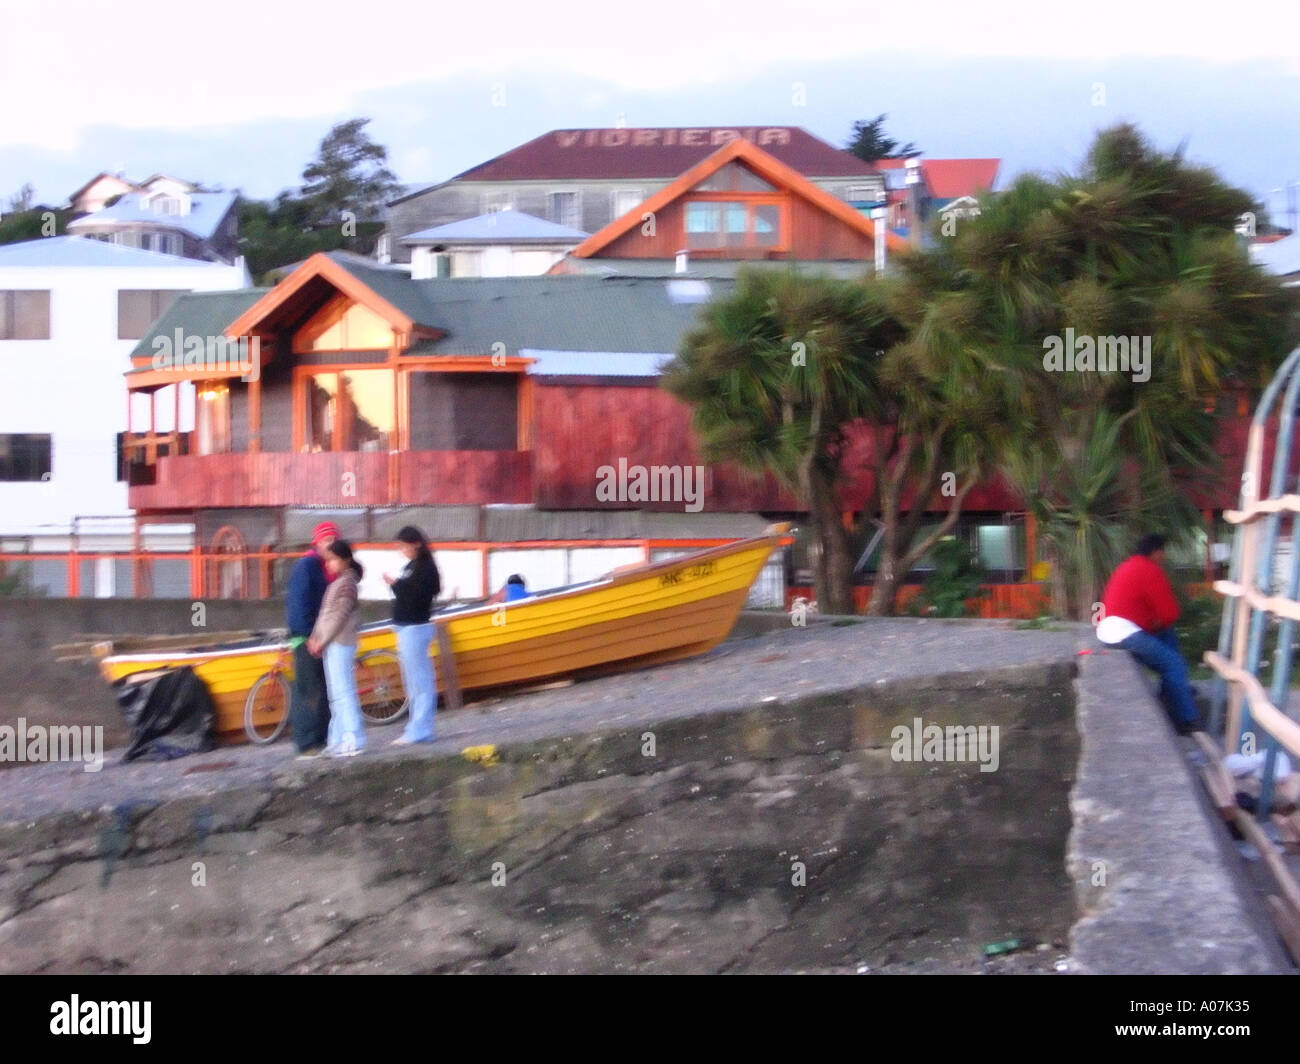 Bateau de pêche et personnes Ancud Chiloe Chili Amérique du Sud Banque D'Images